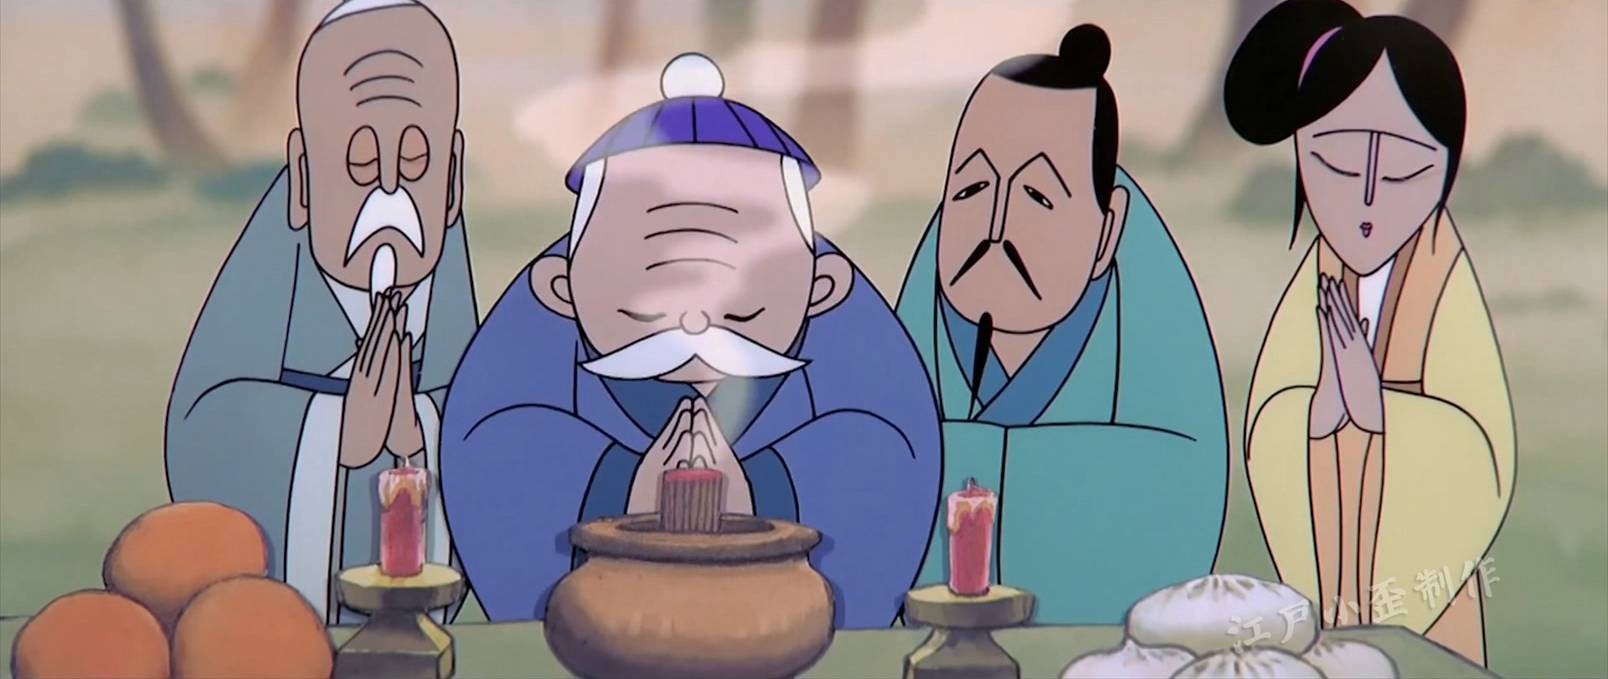 《天书奇谭》——中国动画的第三高峰(高清版)